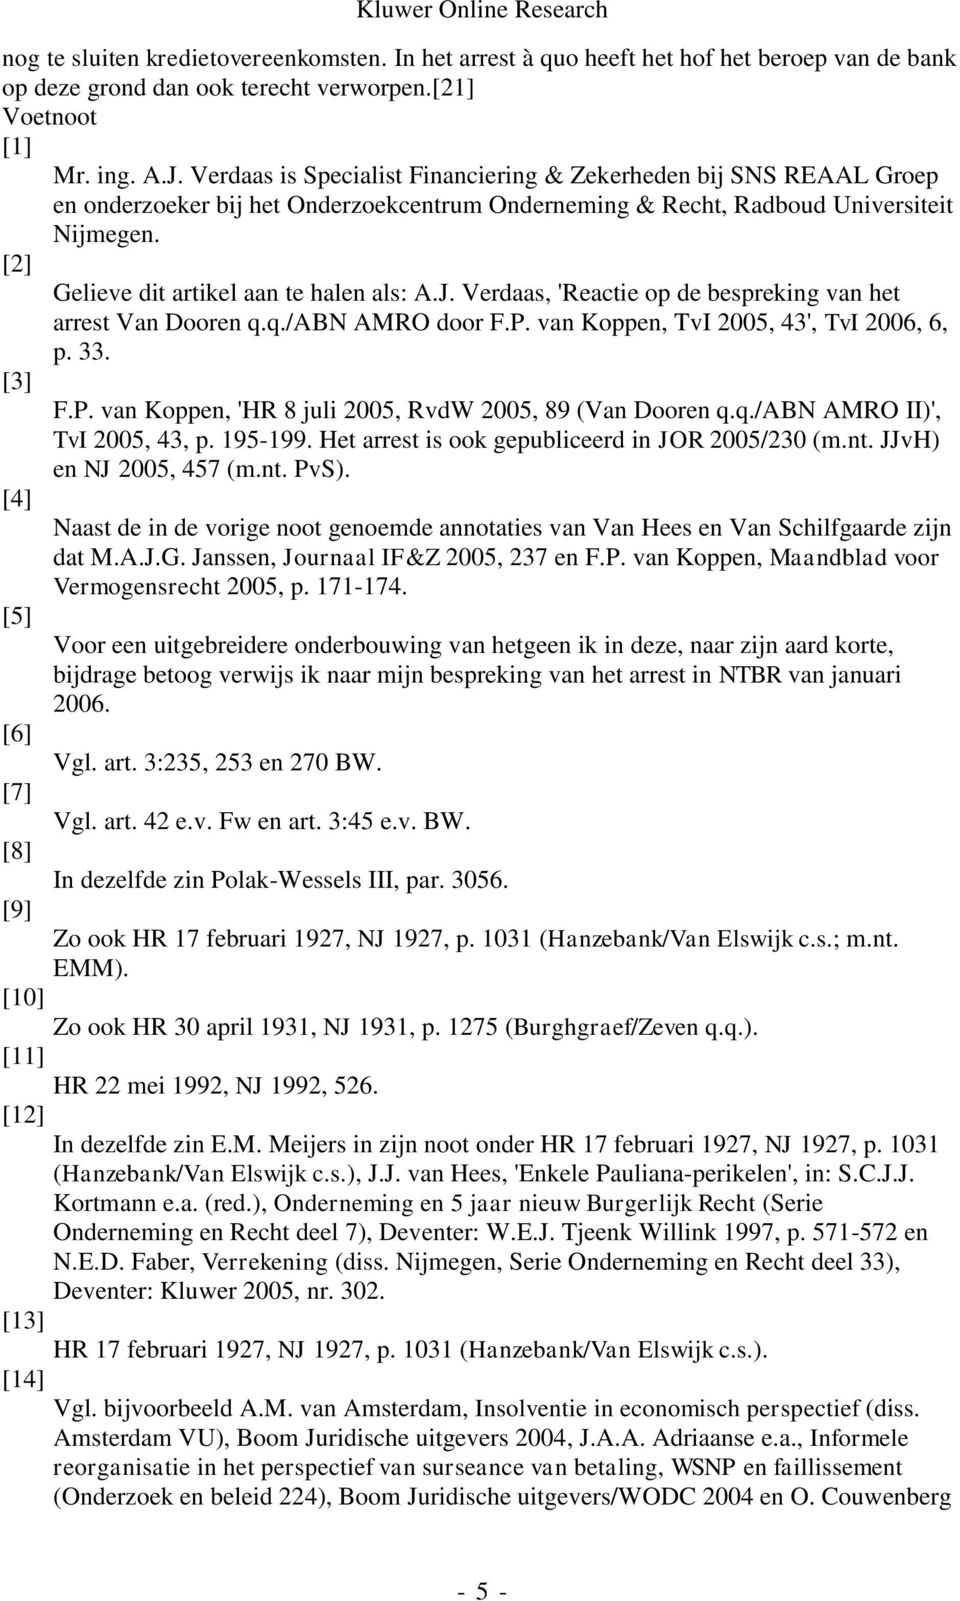 [2] Gelieve dit artikel aan te halen als: A.J. Verdaas, 'Reactie op de bespreking van het arrest Van Dooren q.q./abn AMRO door F.P. van Koppen, TvI 2005, 43', TvI 2006, 6, p. 33. [3] F.P. van Koppen, 'HR 8 juli 2005, RvdW 2005, 89 (Van Dooren q.